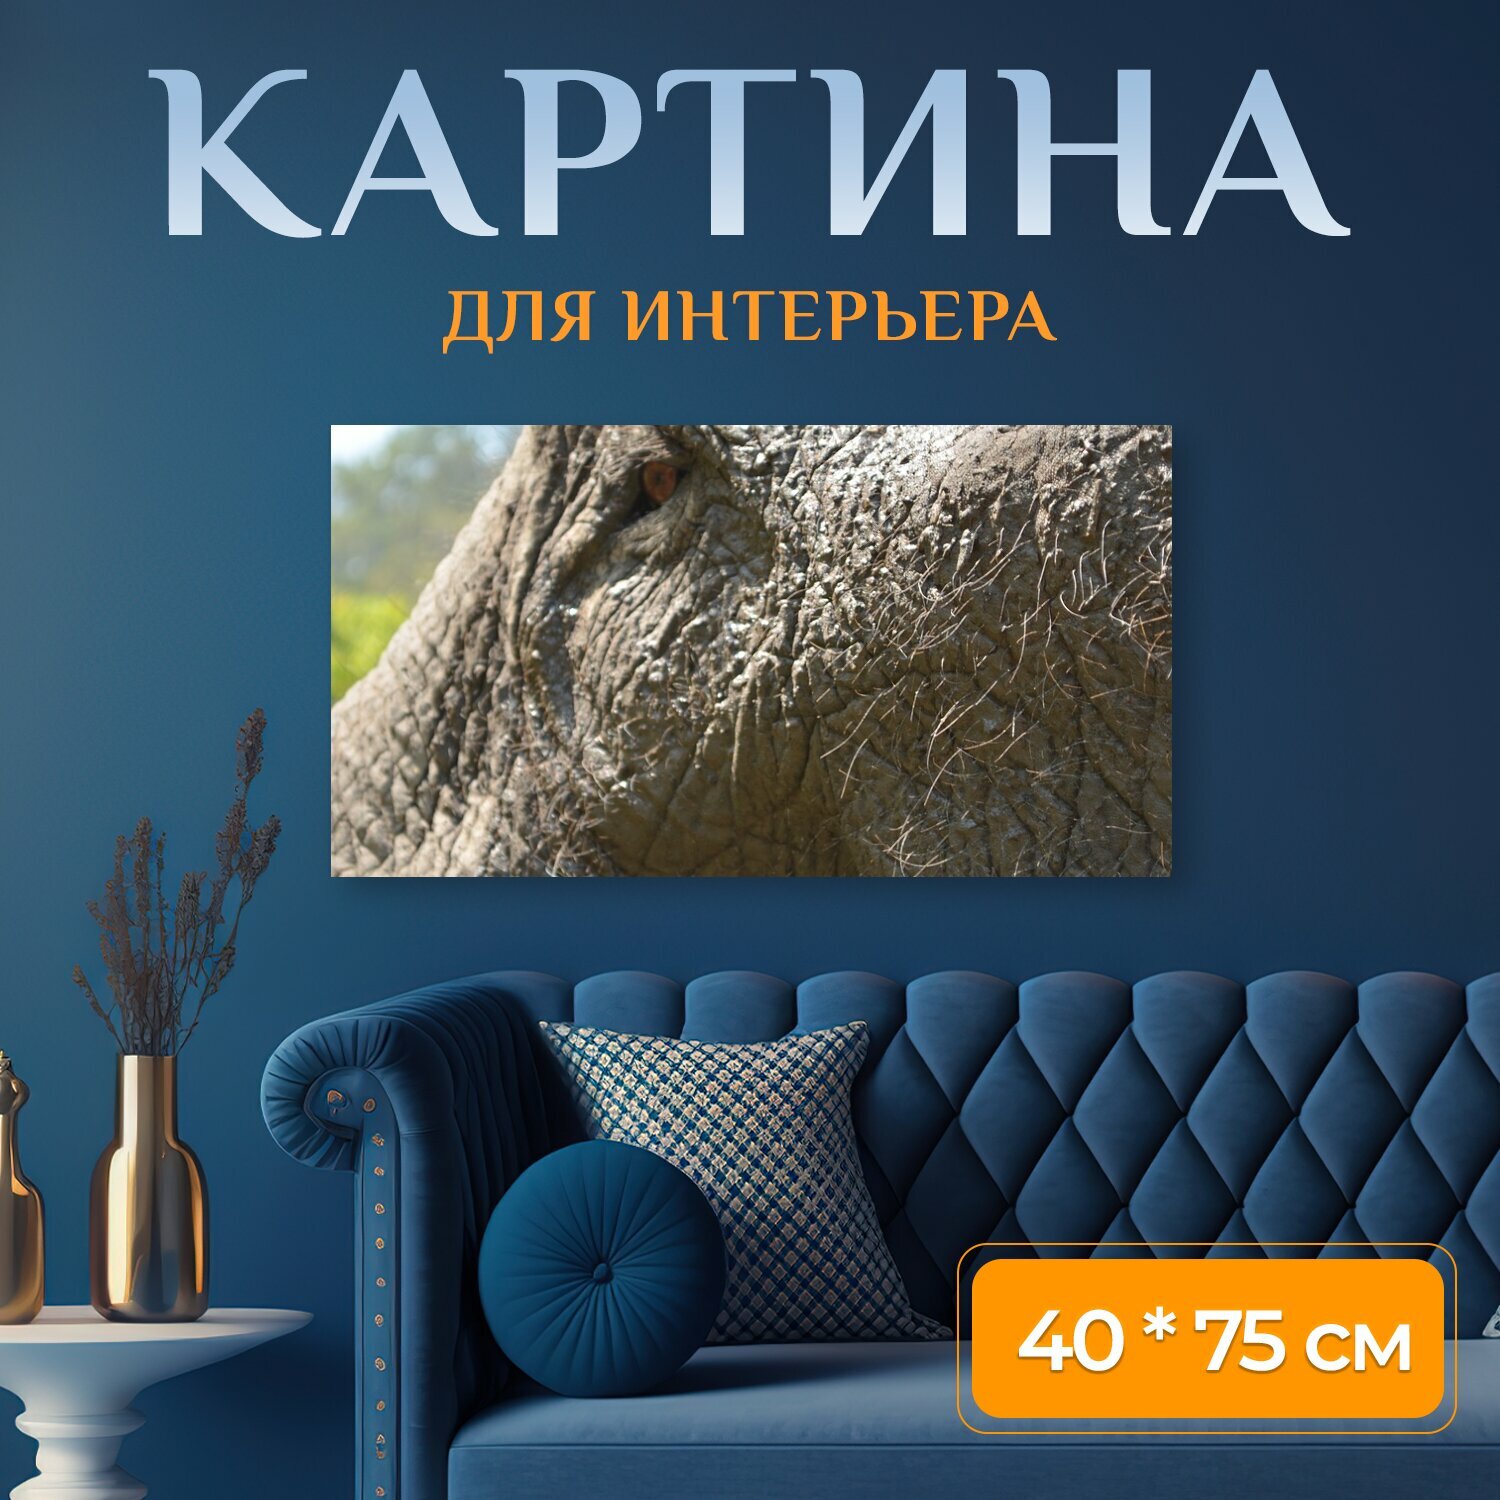 Картина на холсте "Таиланд, национальный парк, слон" на подрамнике 75х40 см. для интерьера